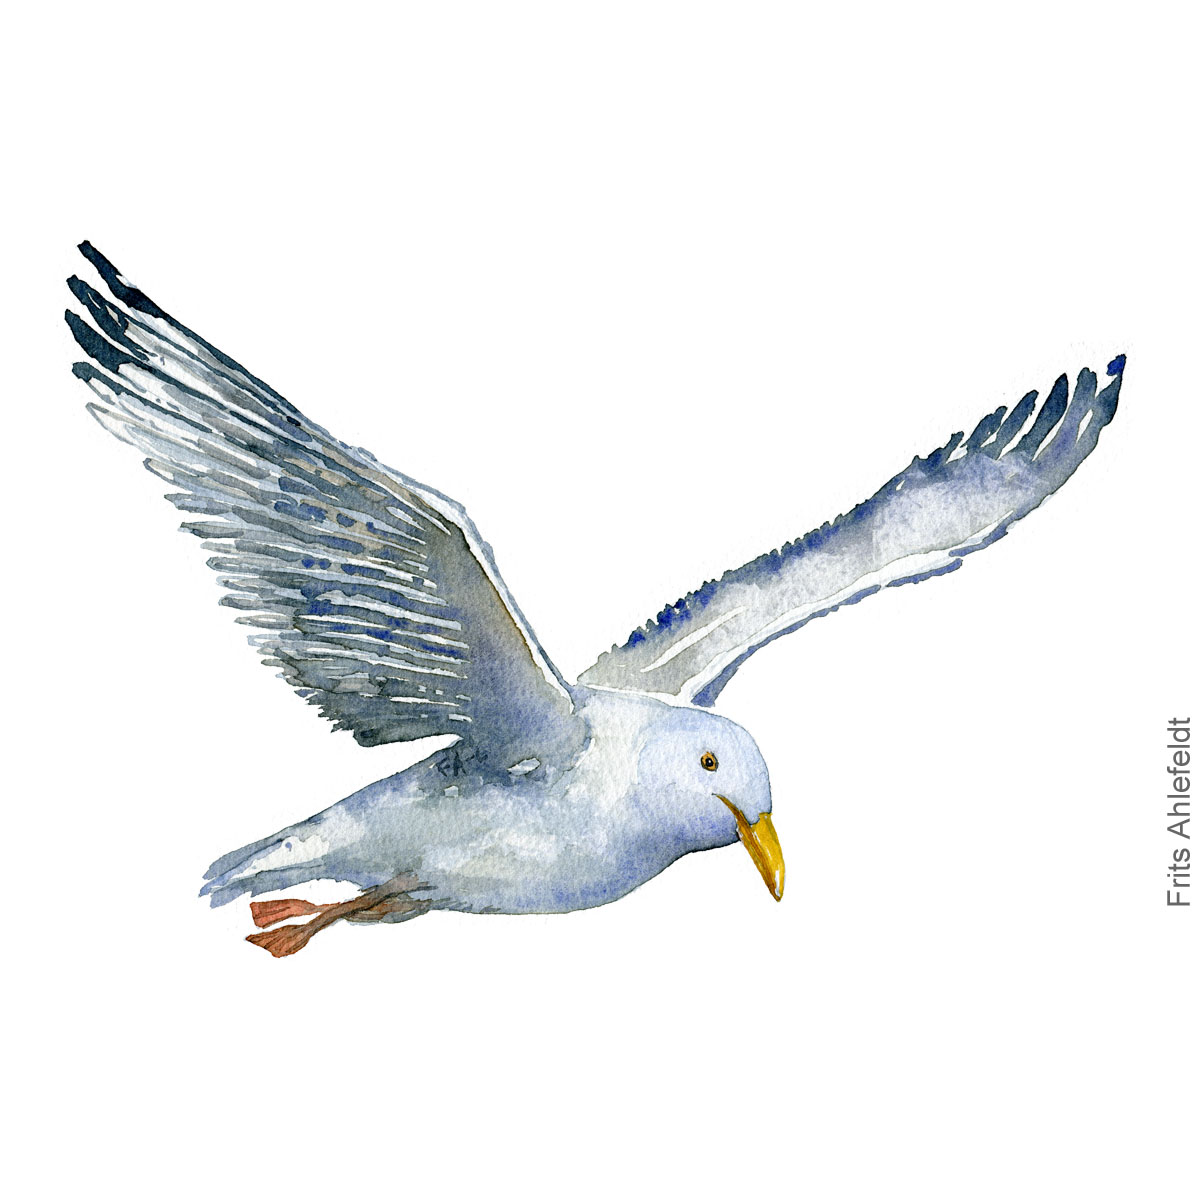 maage med fødderne ude, seagull with feet out bird watercolor illustration. Artwork by Frits Ahlefeldt. Fugle akvarel